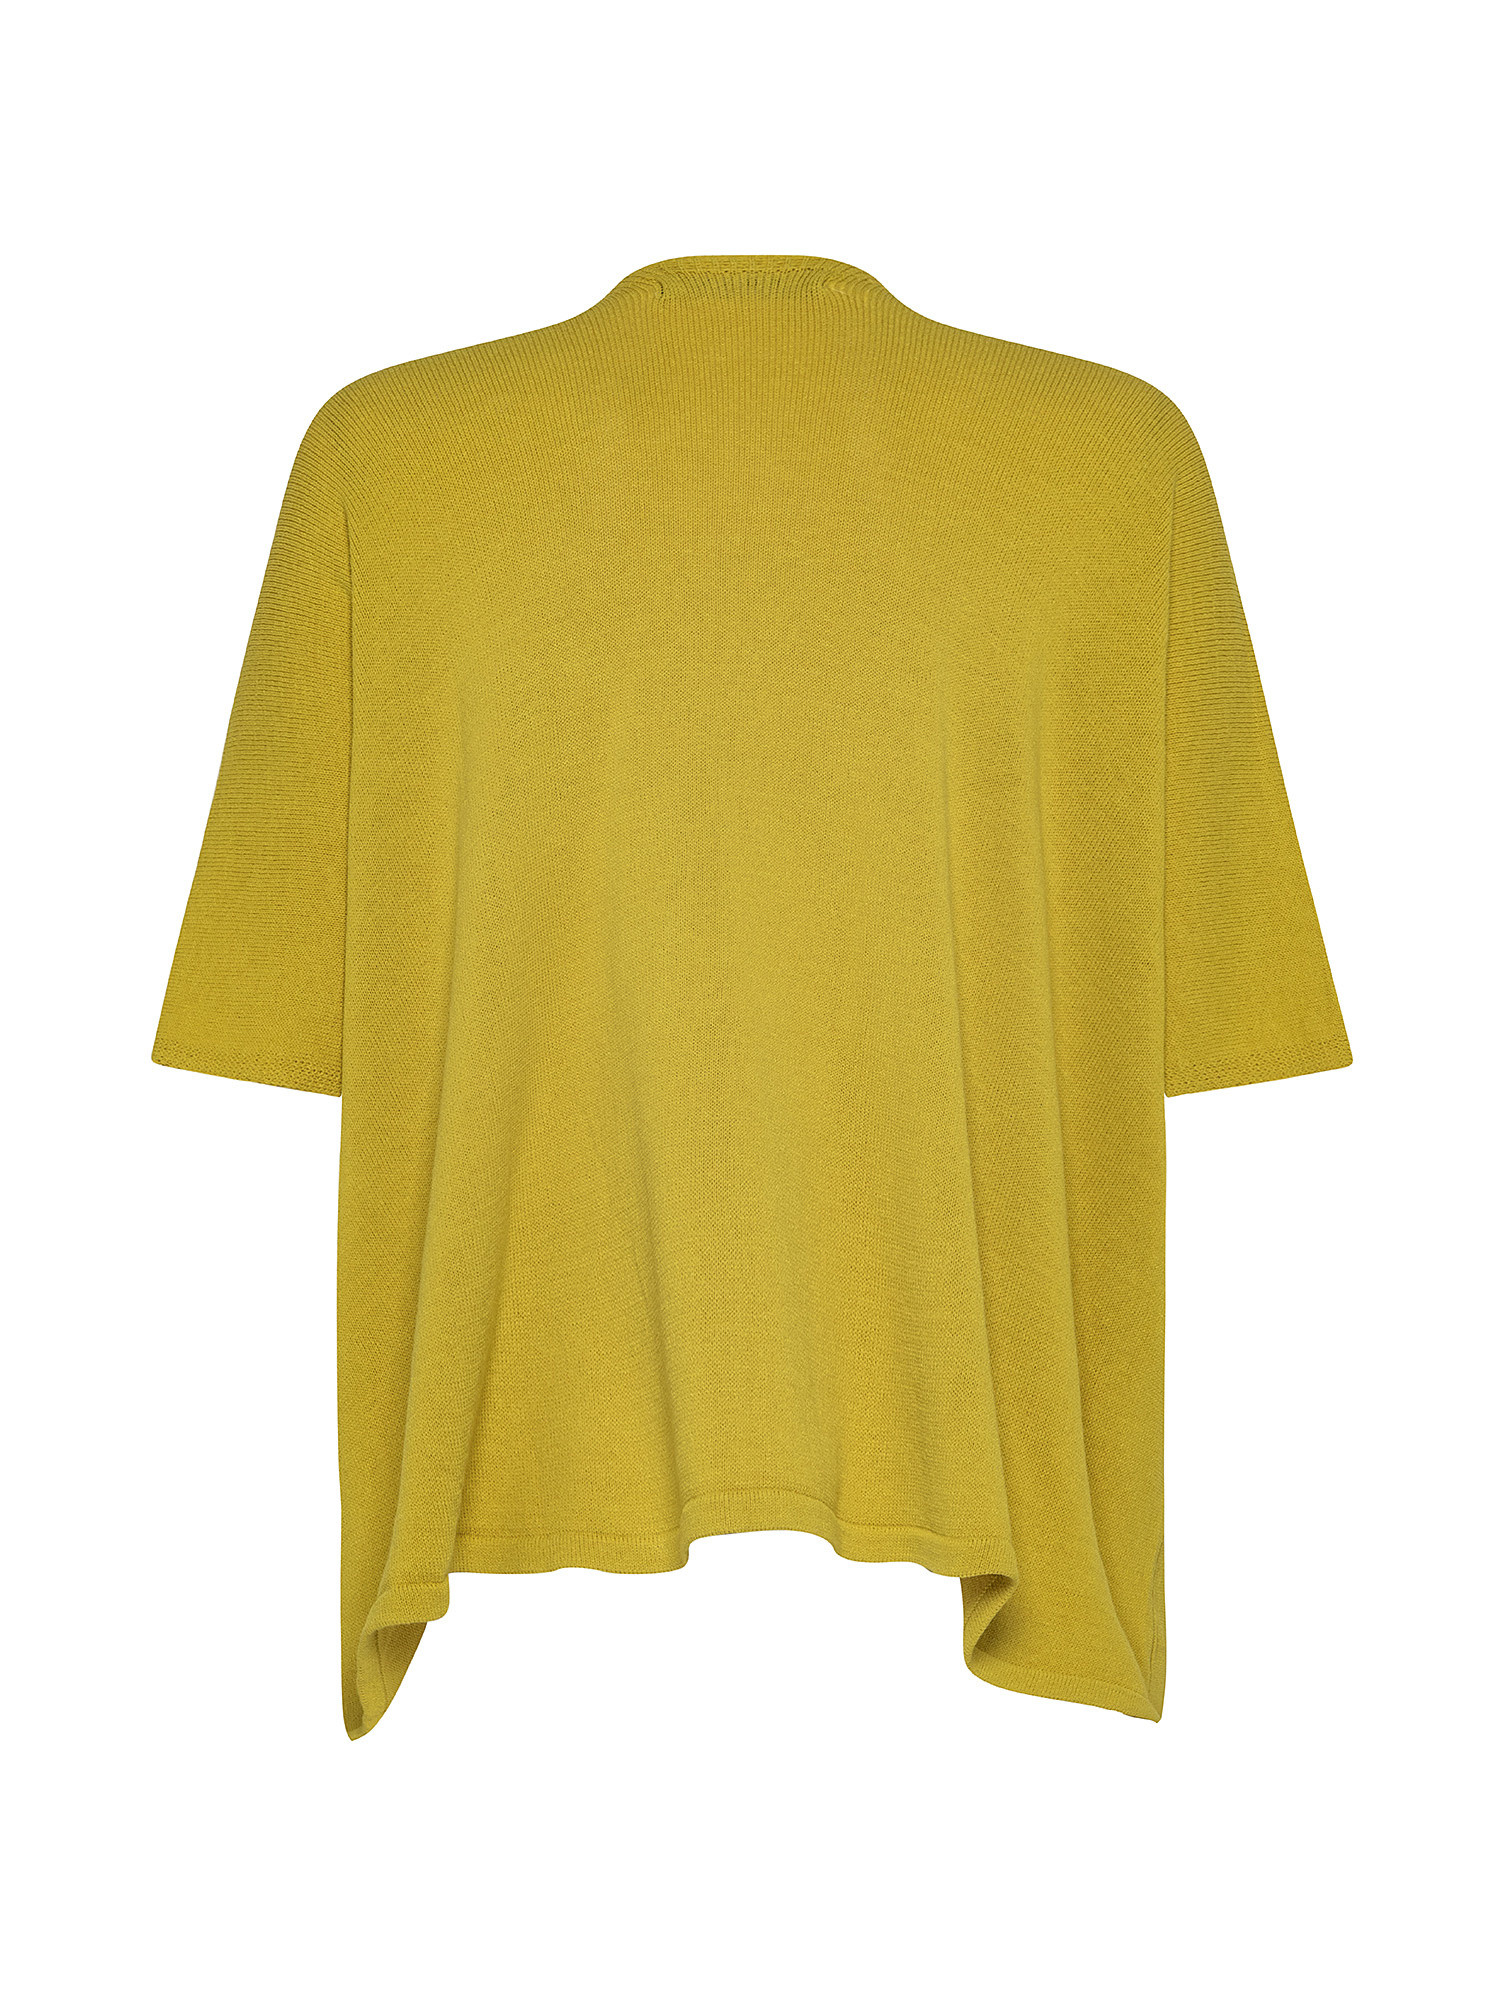 Cardigan, Mustard Yellow, large image number 1